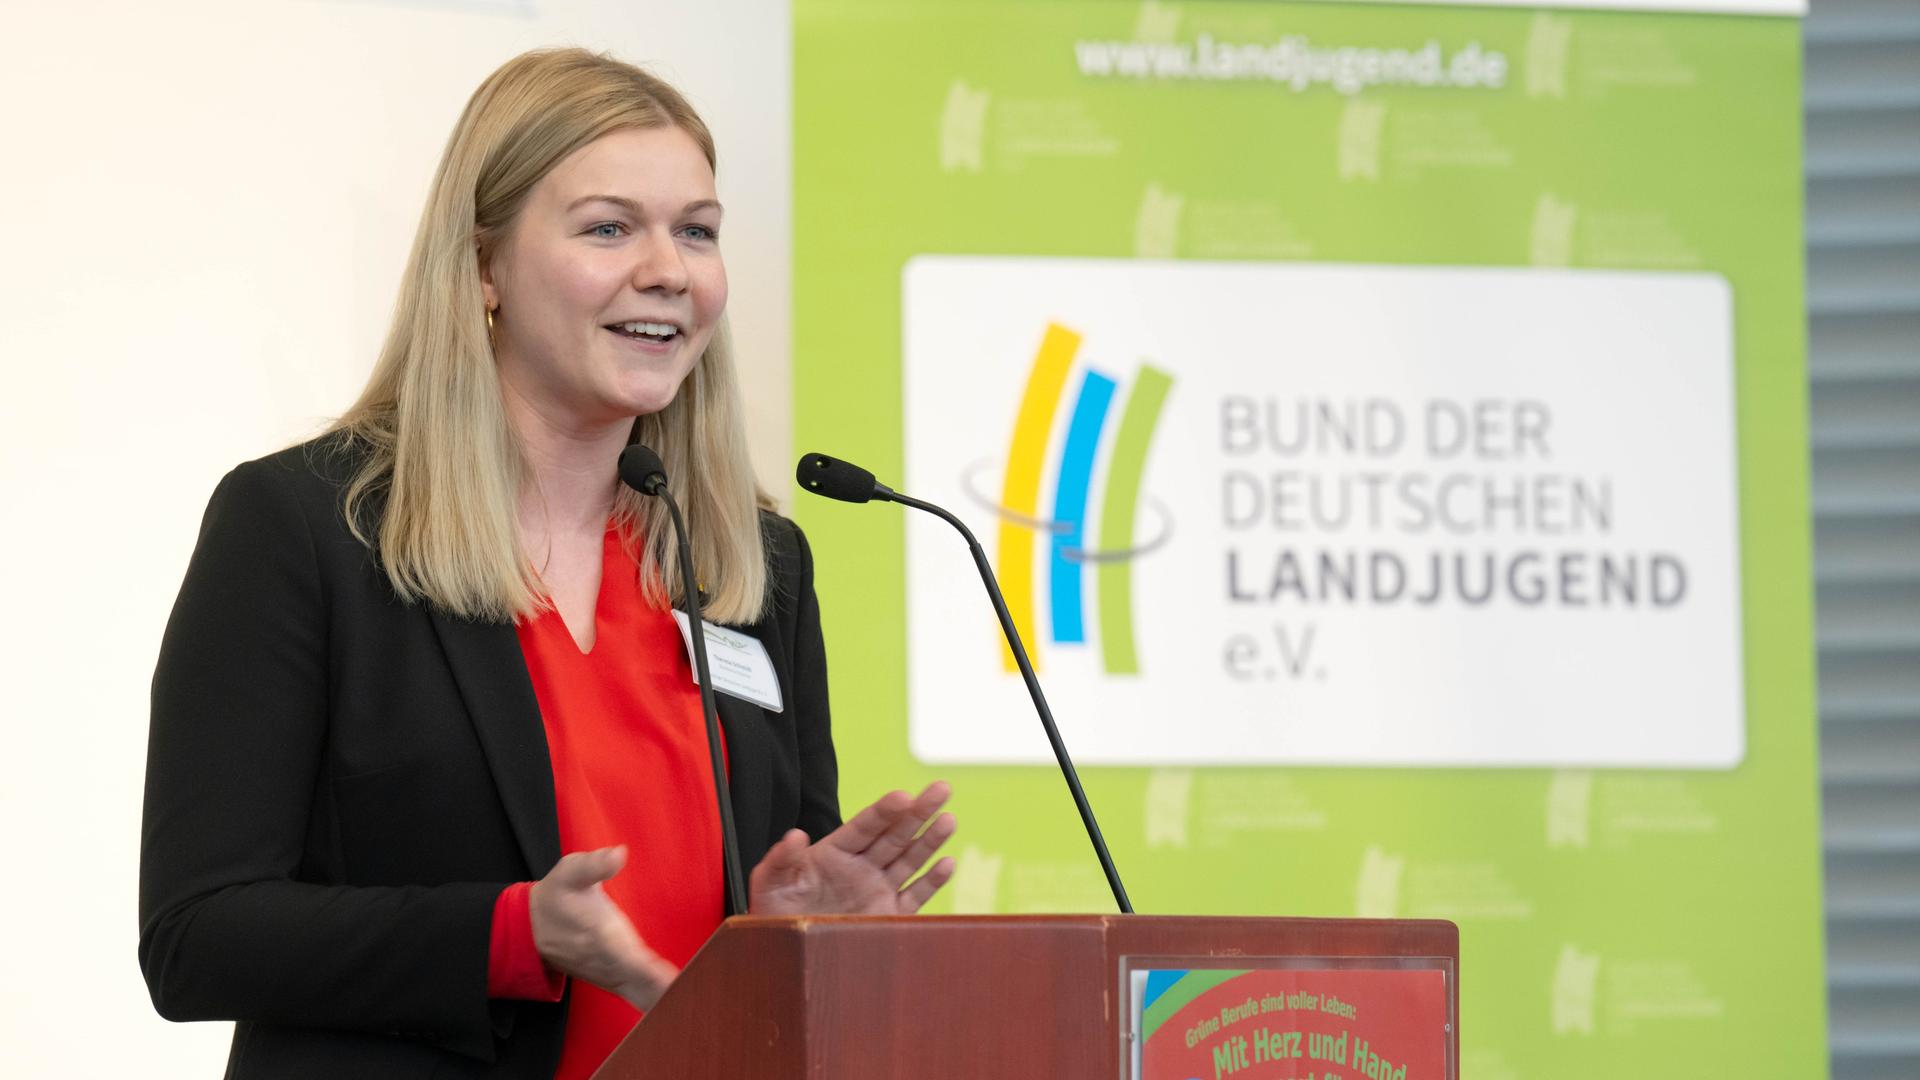 Theresa Schmidt, Vorsitzende des Bundes der Deutschen Landjugend (BDL), spricht bei der Eröffnung vom Berufswettbewerb der Landjugend.